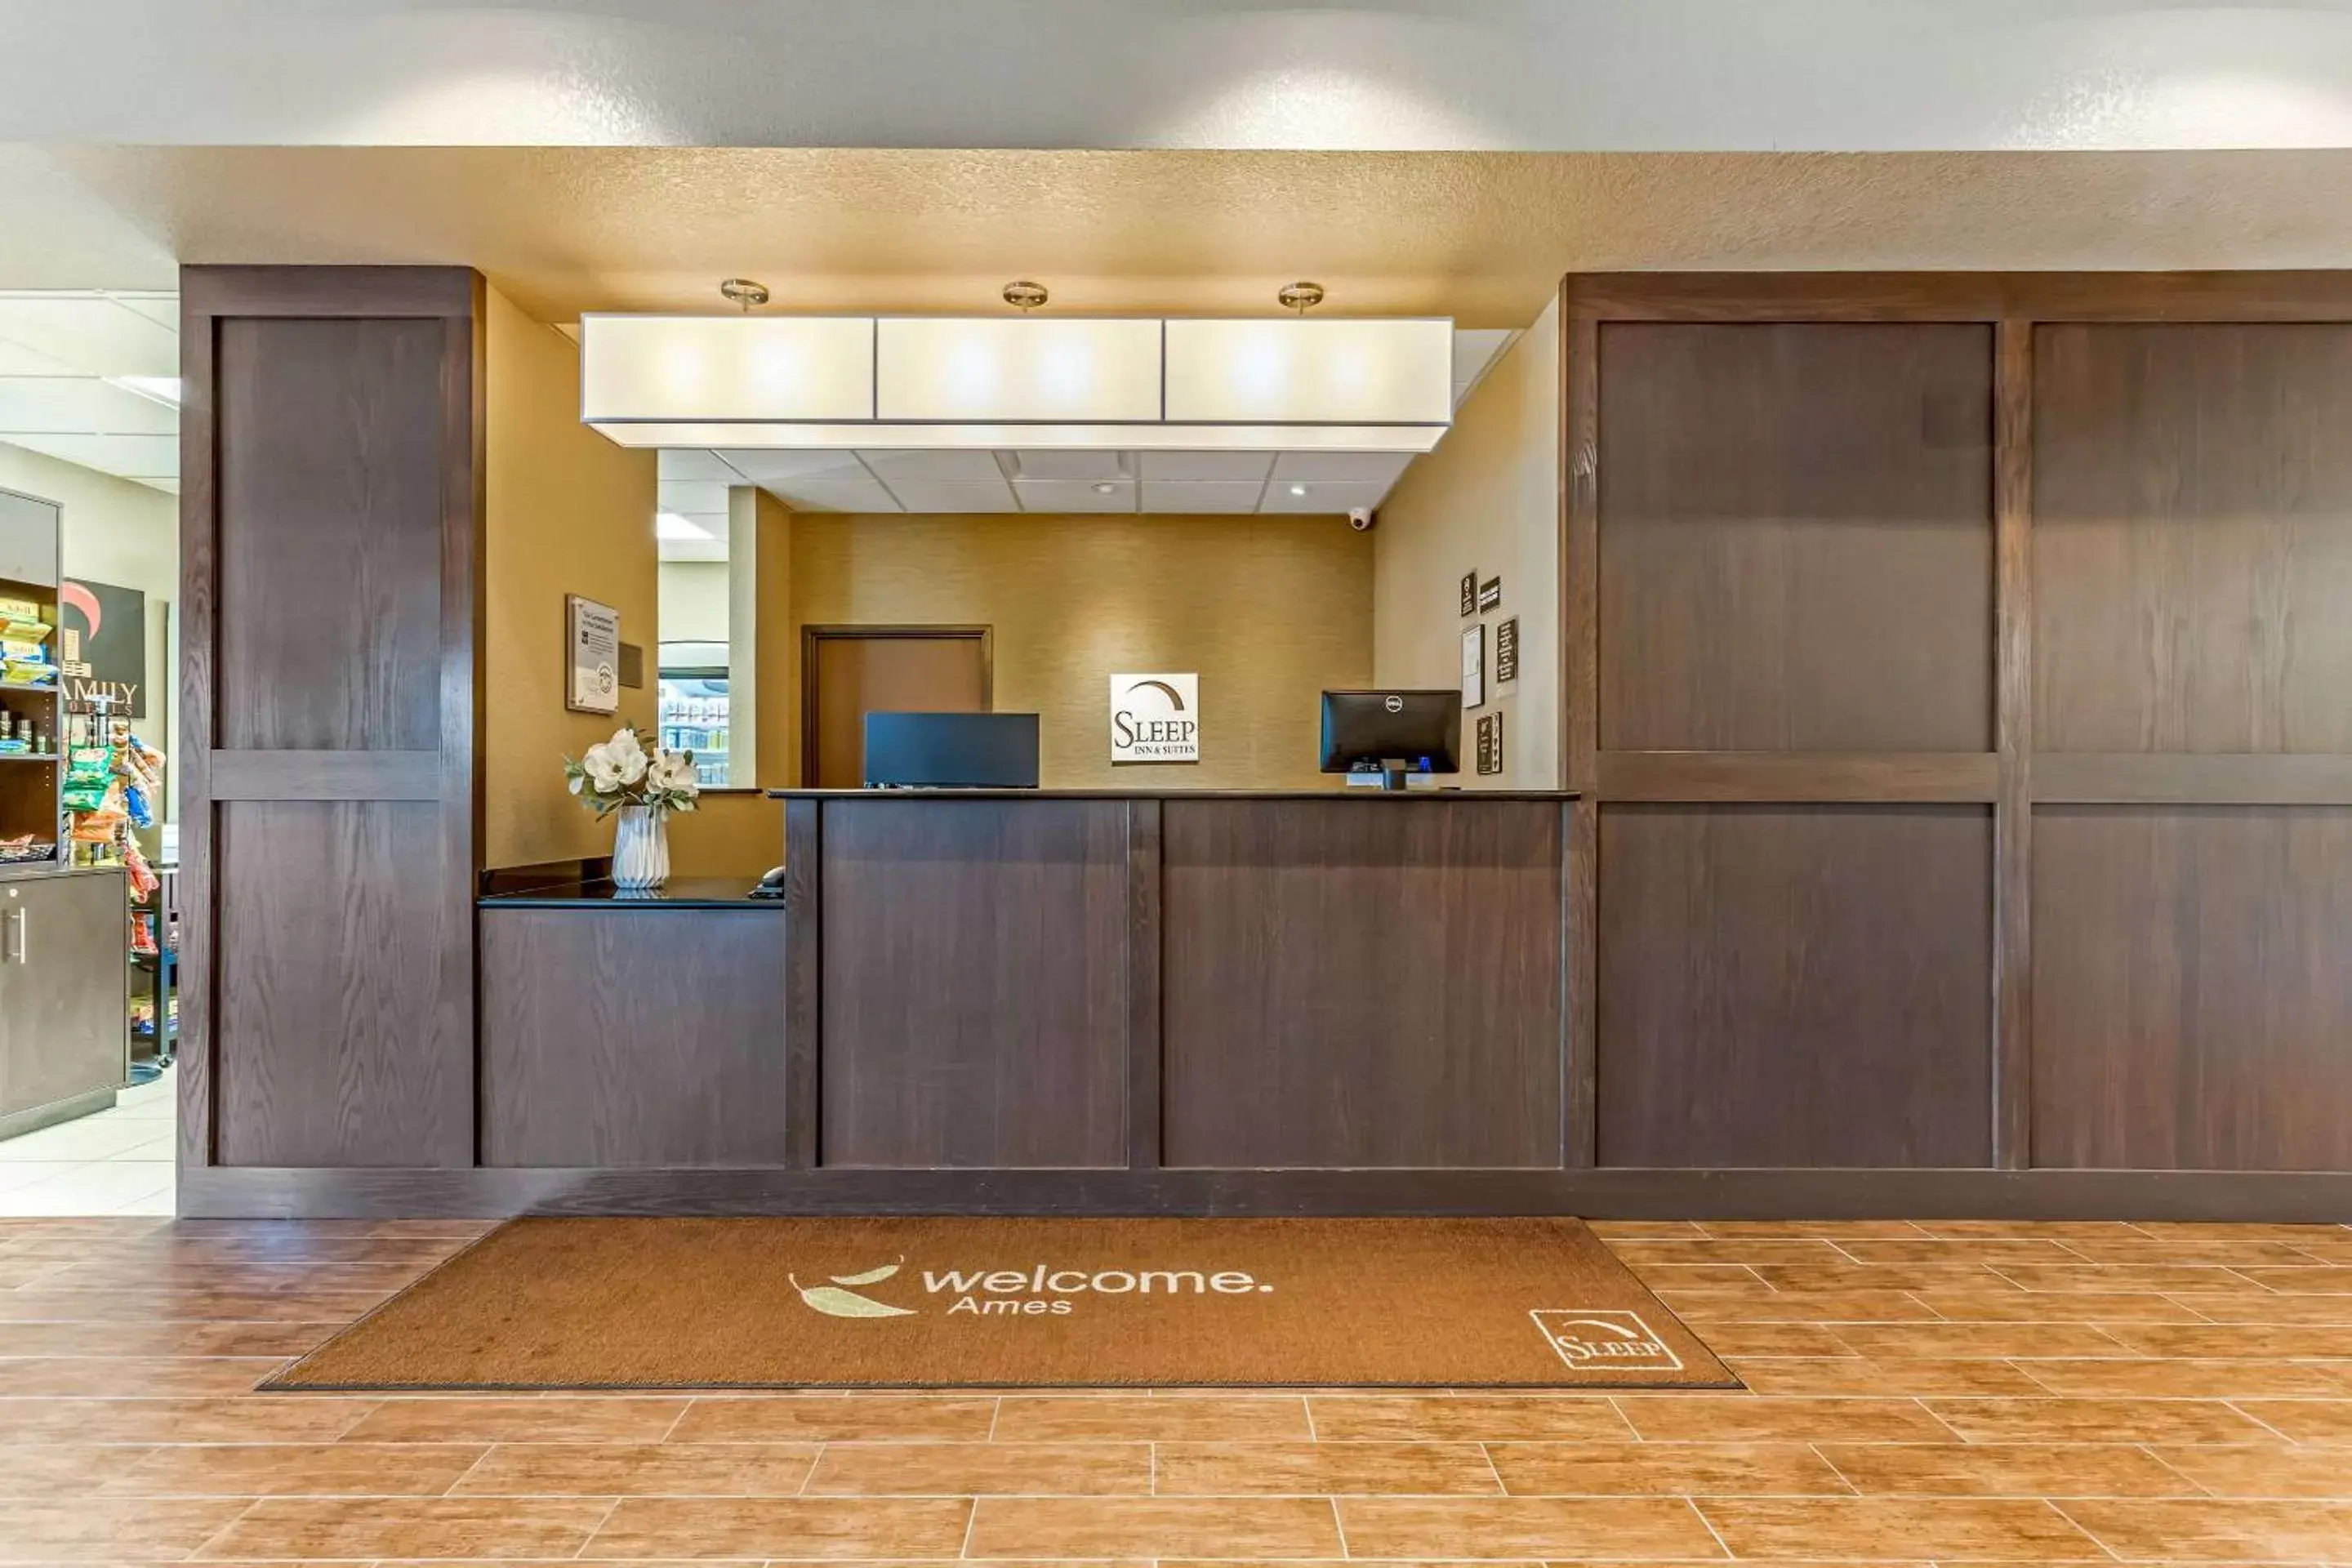 Lobby or reception, Lobby/Reception in Sleep Inn & Suites Ames near ISU Campus